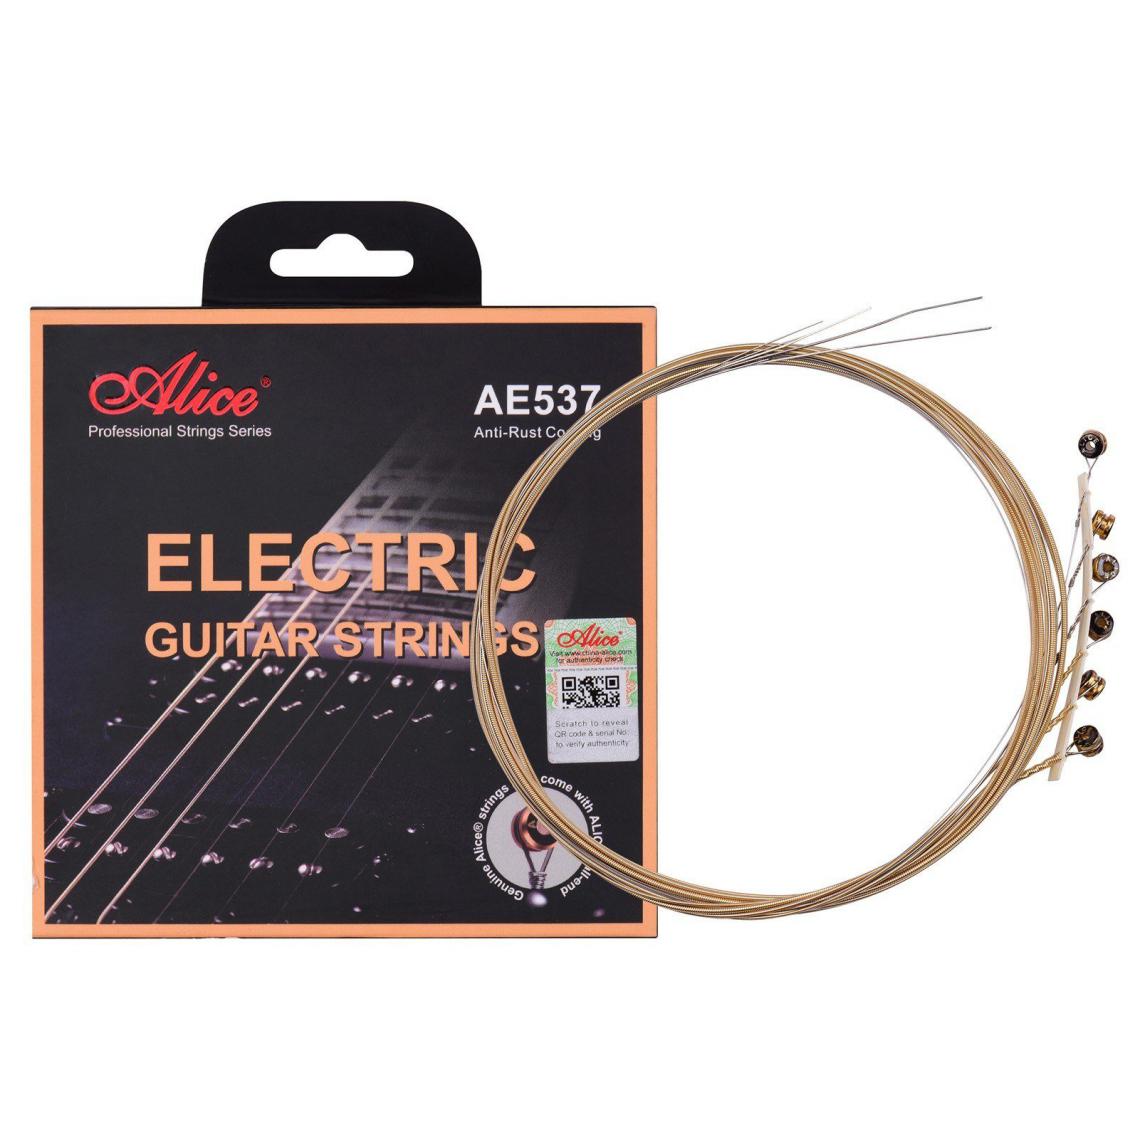 Justgreenbox - Cordes de guitare électrique à noyau hexagonal ensemble de cordes d'enroulement en alliage de fer bronze pour guitares 22-24 frettes, S - Cordes